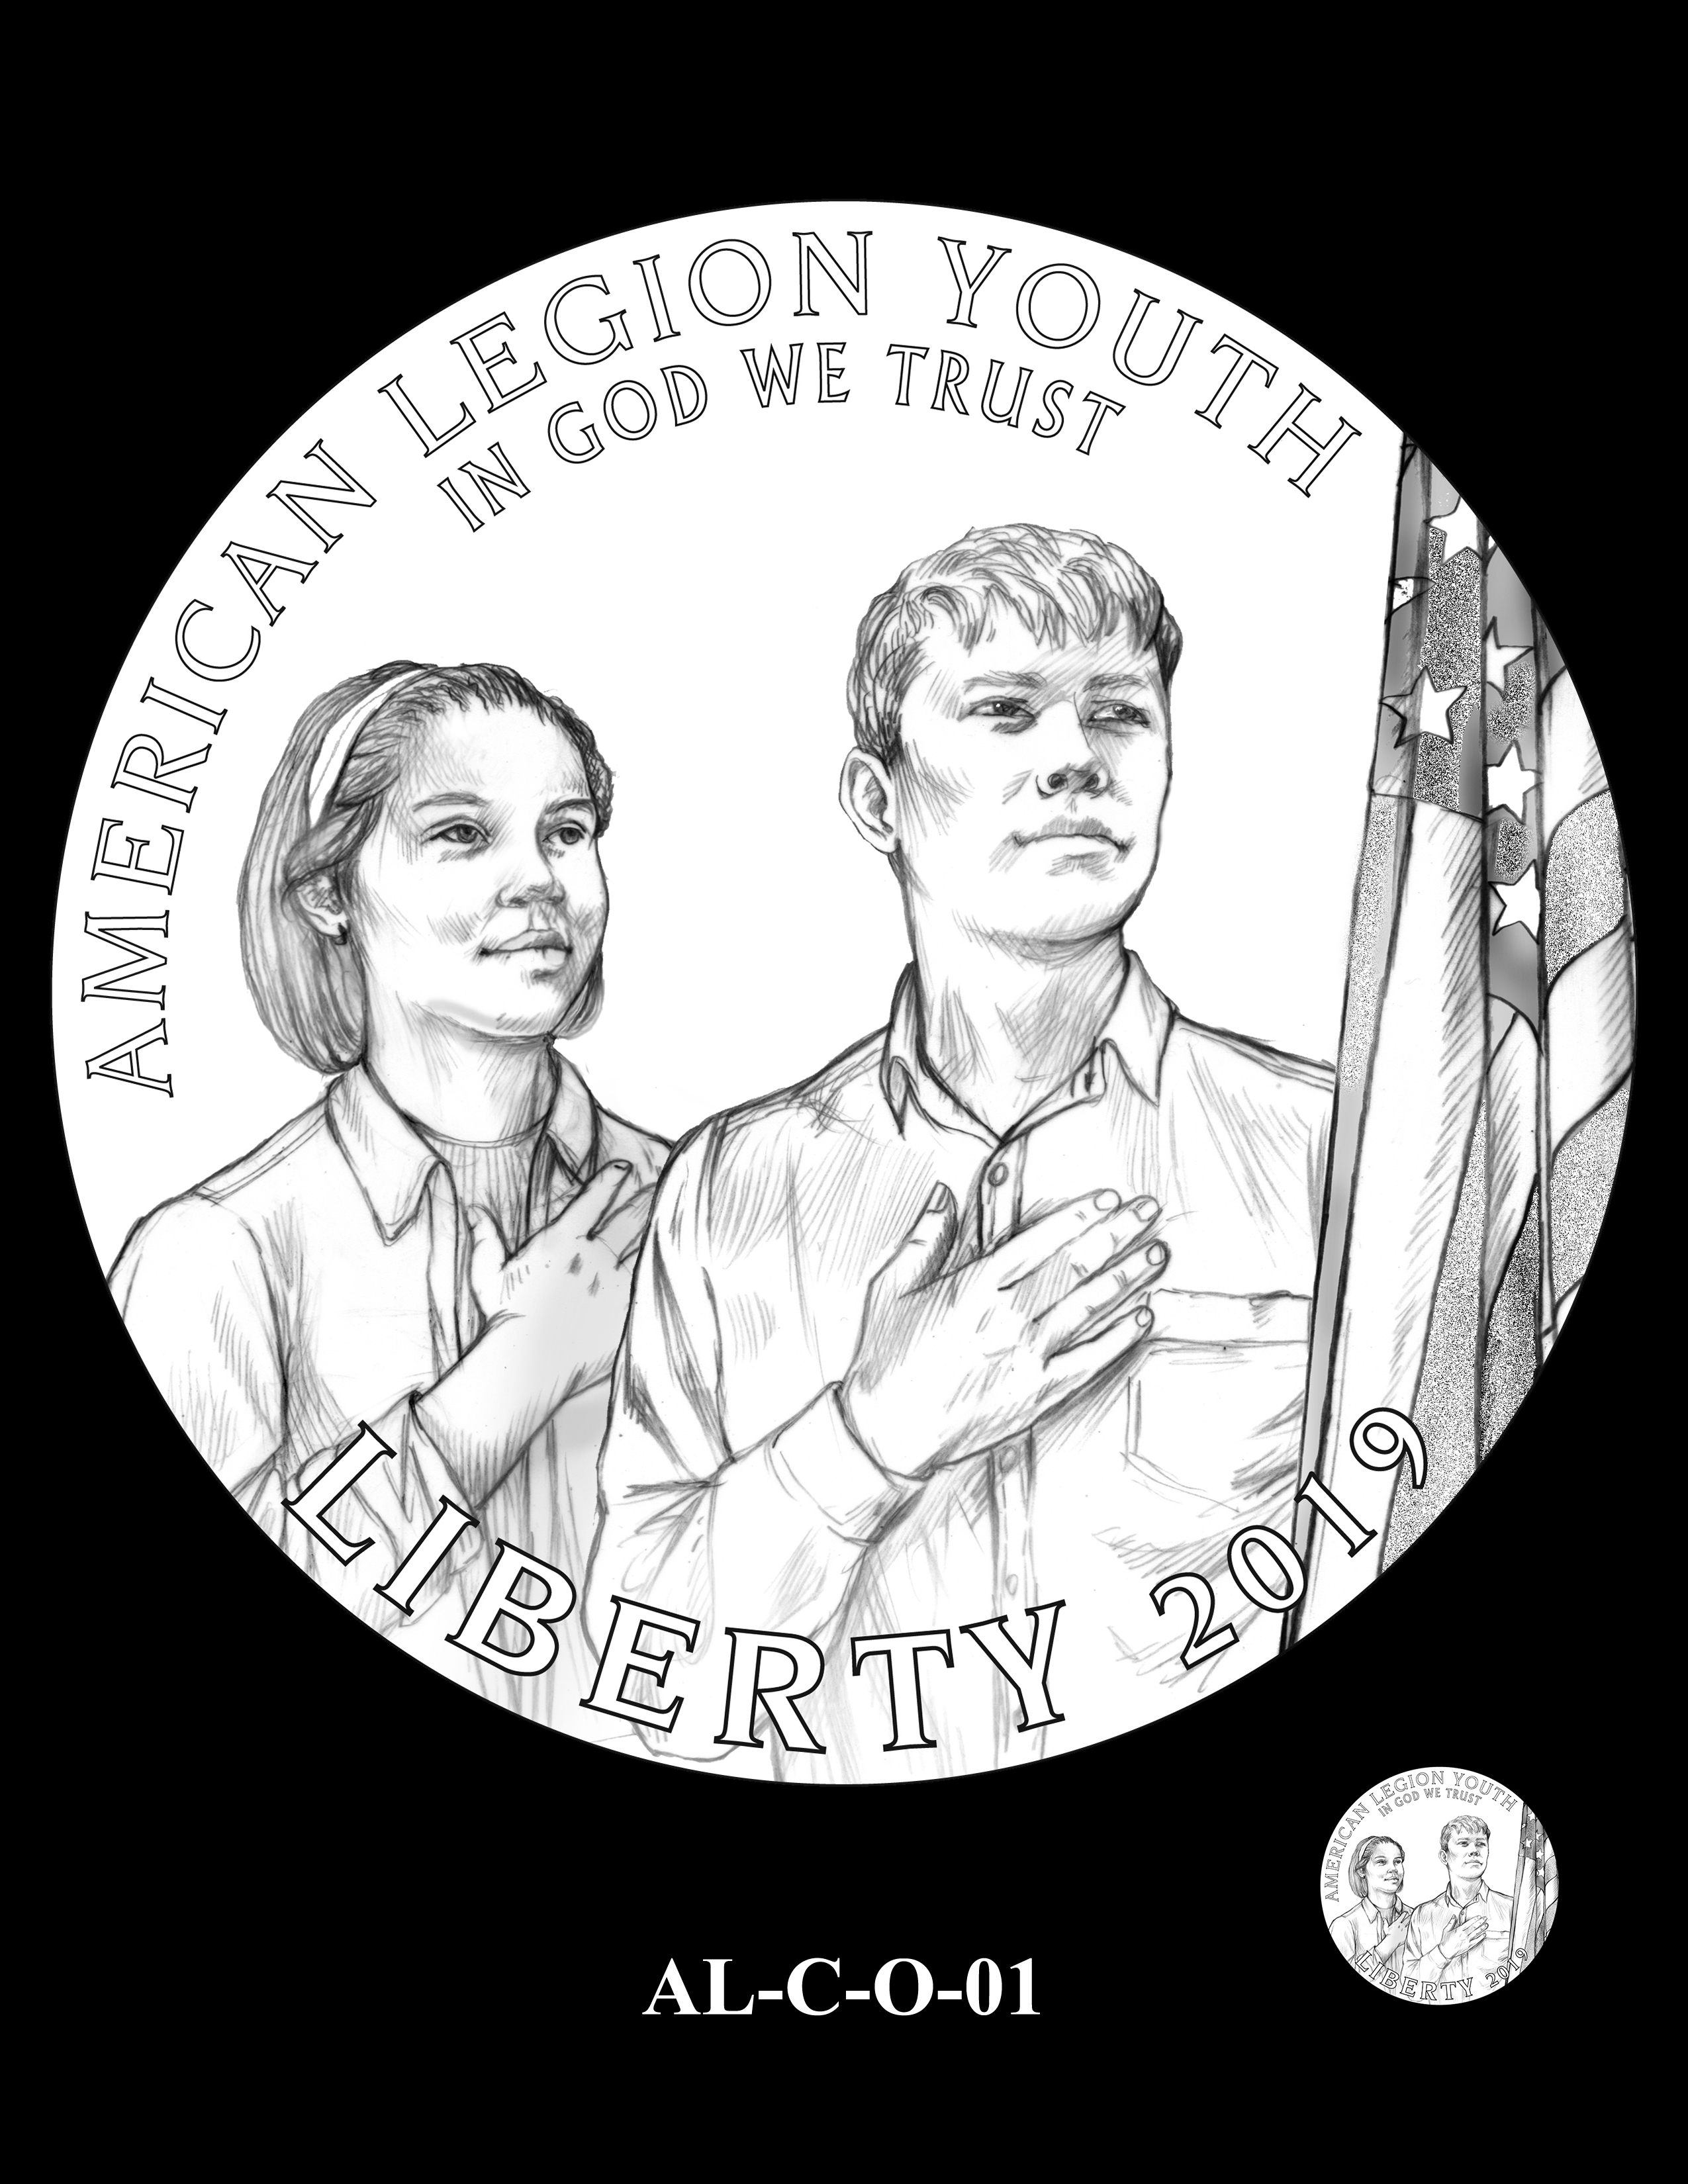 AL-C-O-01 -- 2019 American Legion 100th Anniversary Commemorative Coin Program - Clad Obverse